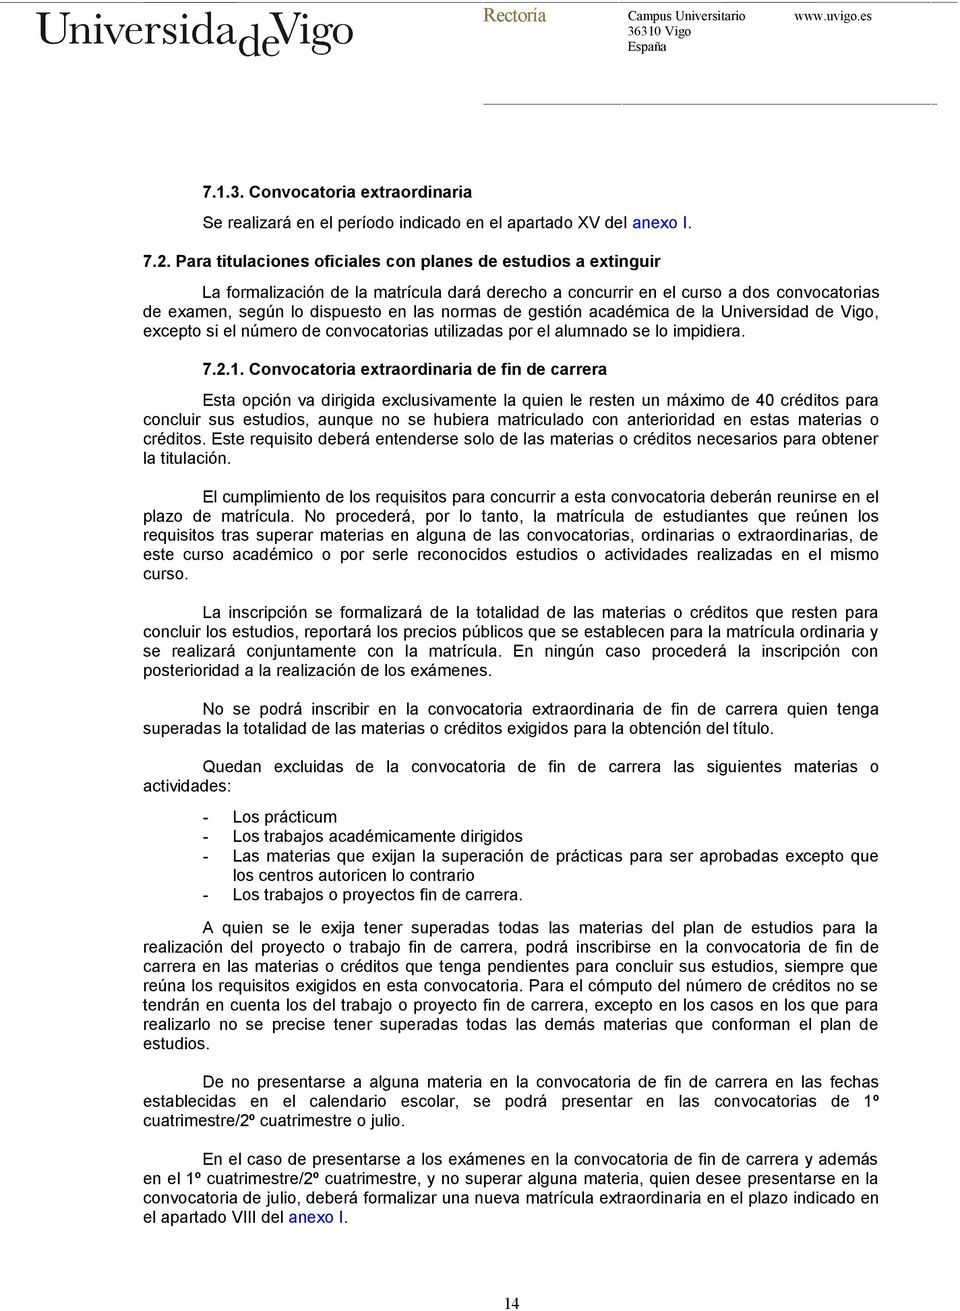 gestión académica de la Universidad de Vigo, excepto si el número de convocatorias utilizadas por el alumnado se lo impidiera. 7.2.1.